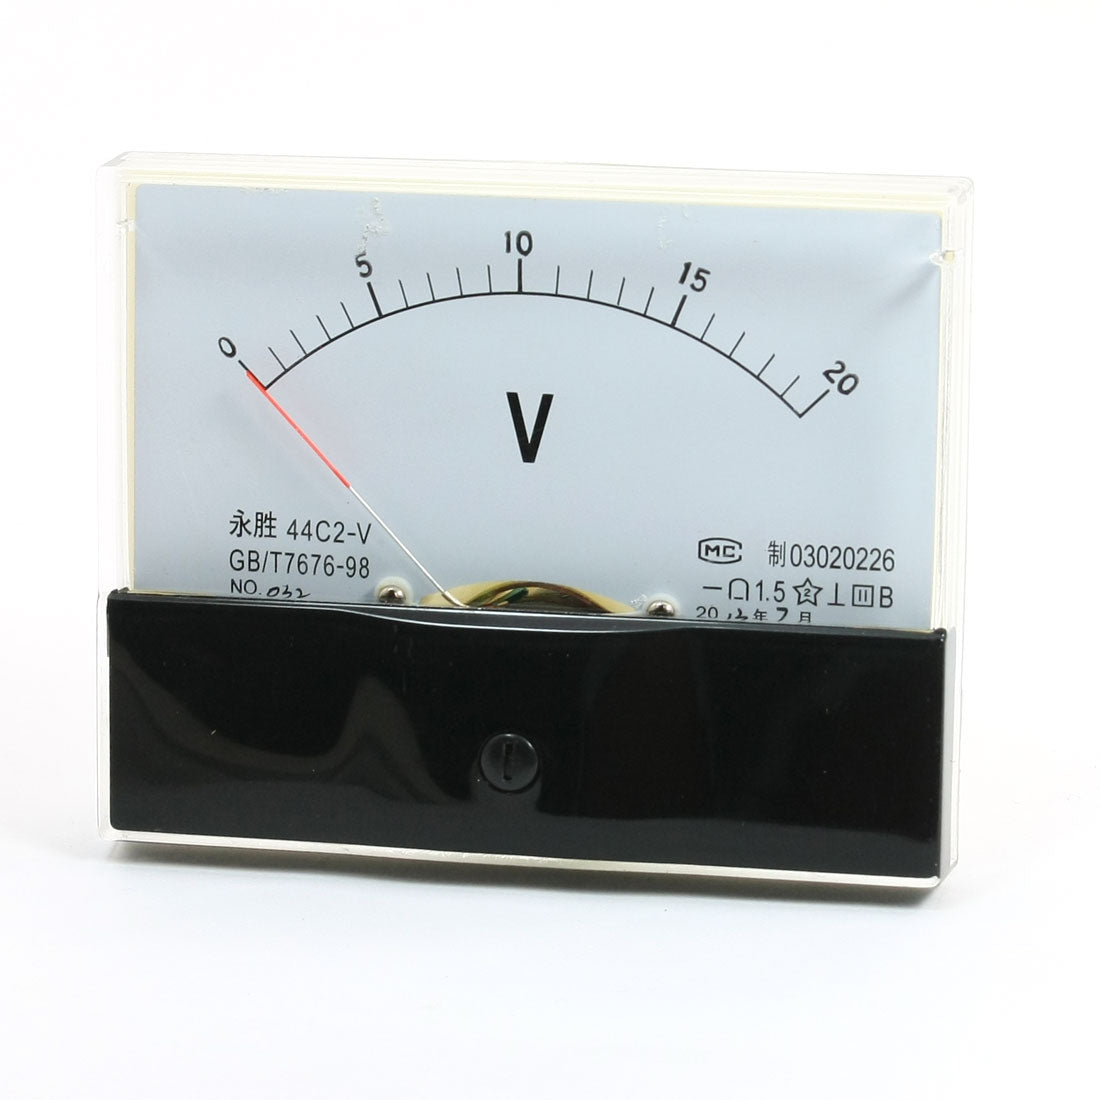 uxcell Uxcell DC 0-20V Measuring Range Panel Analog Voltage Meter Voltmeter 44C2-V